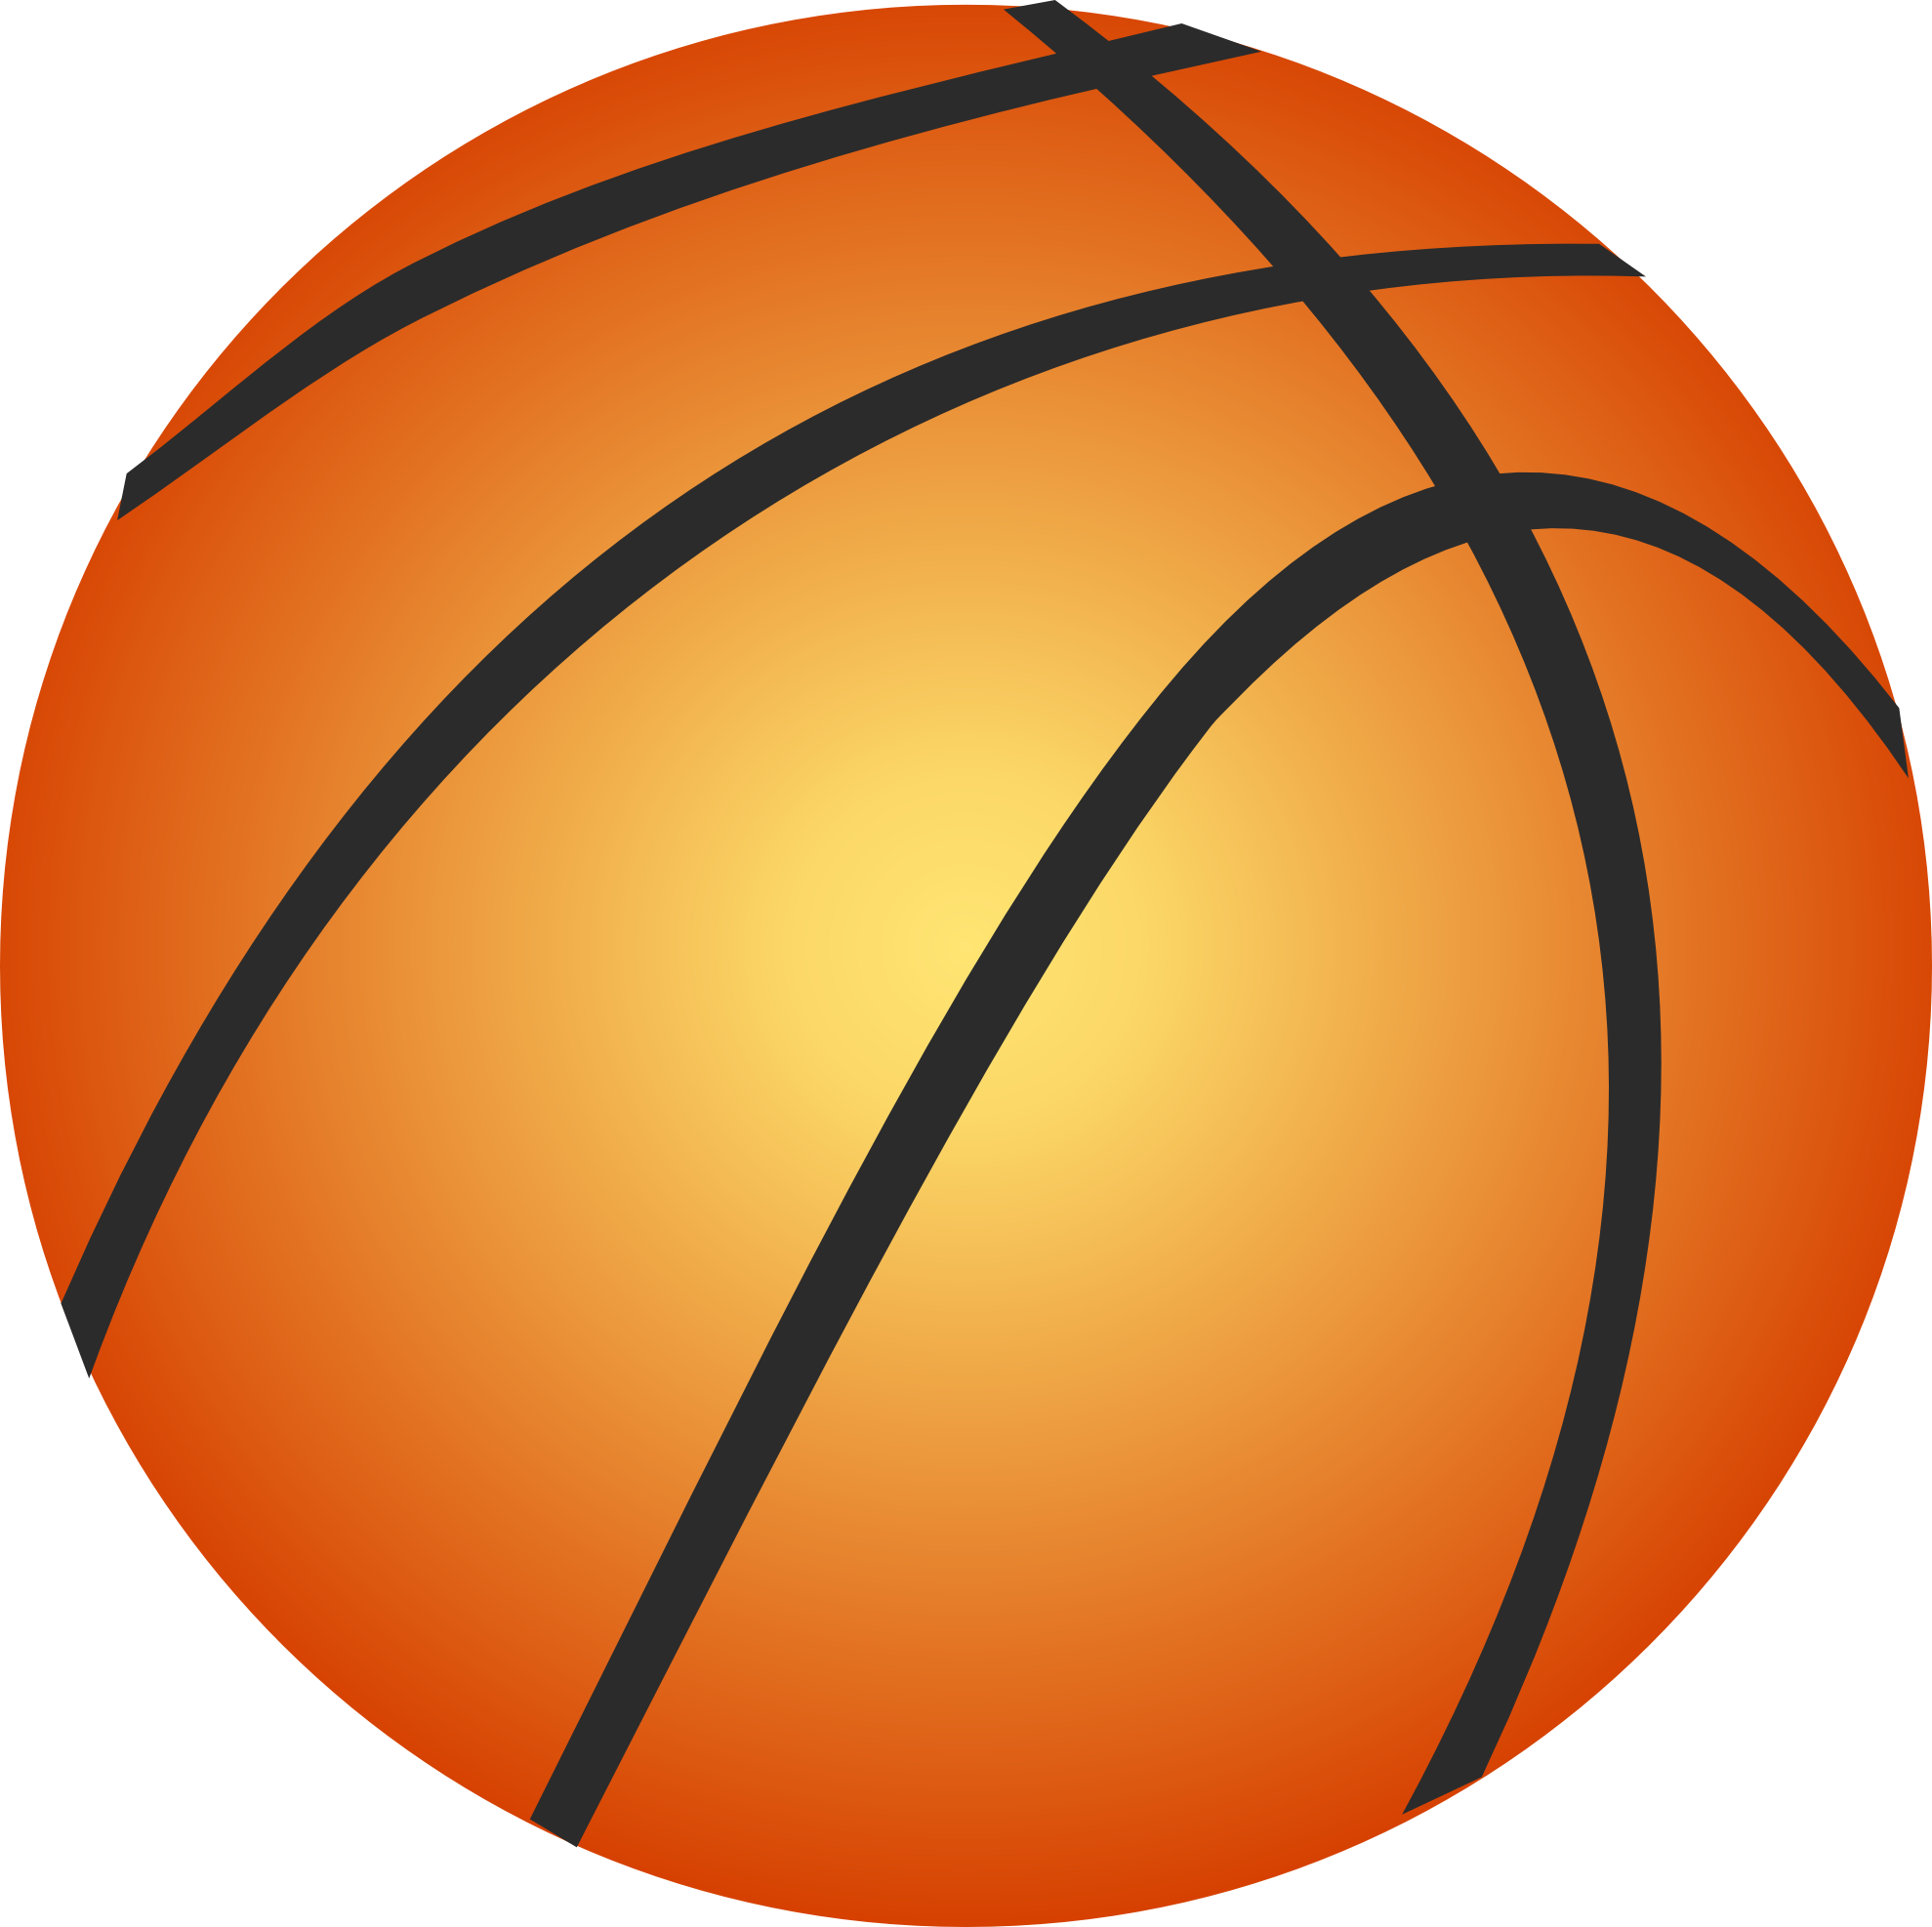 Basketball Icon PNG HD Image - Basketball Png